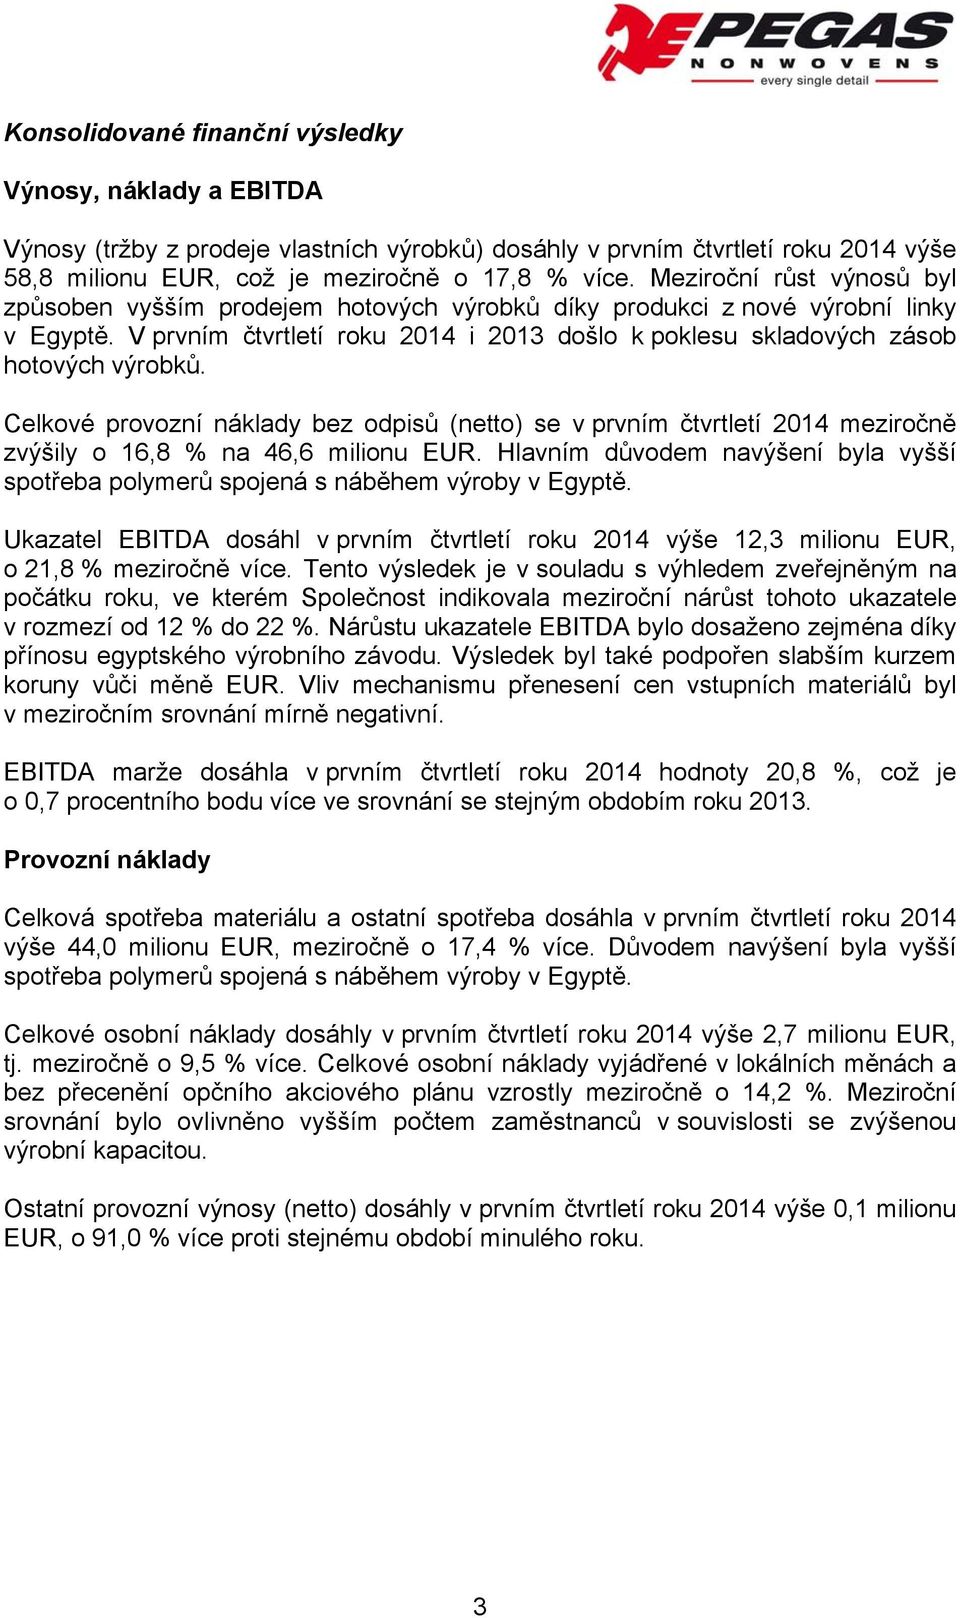 Celkové provozní náklady bez odpisů (netto) se v prvním čtvrtletí 2014 meziročně zvýšily o 16,8 % na 46,6 milionu EUR.